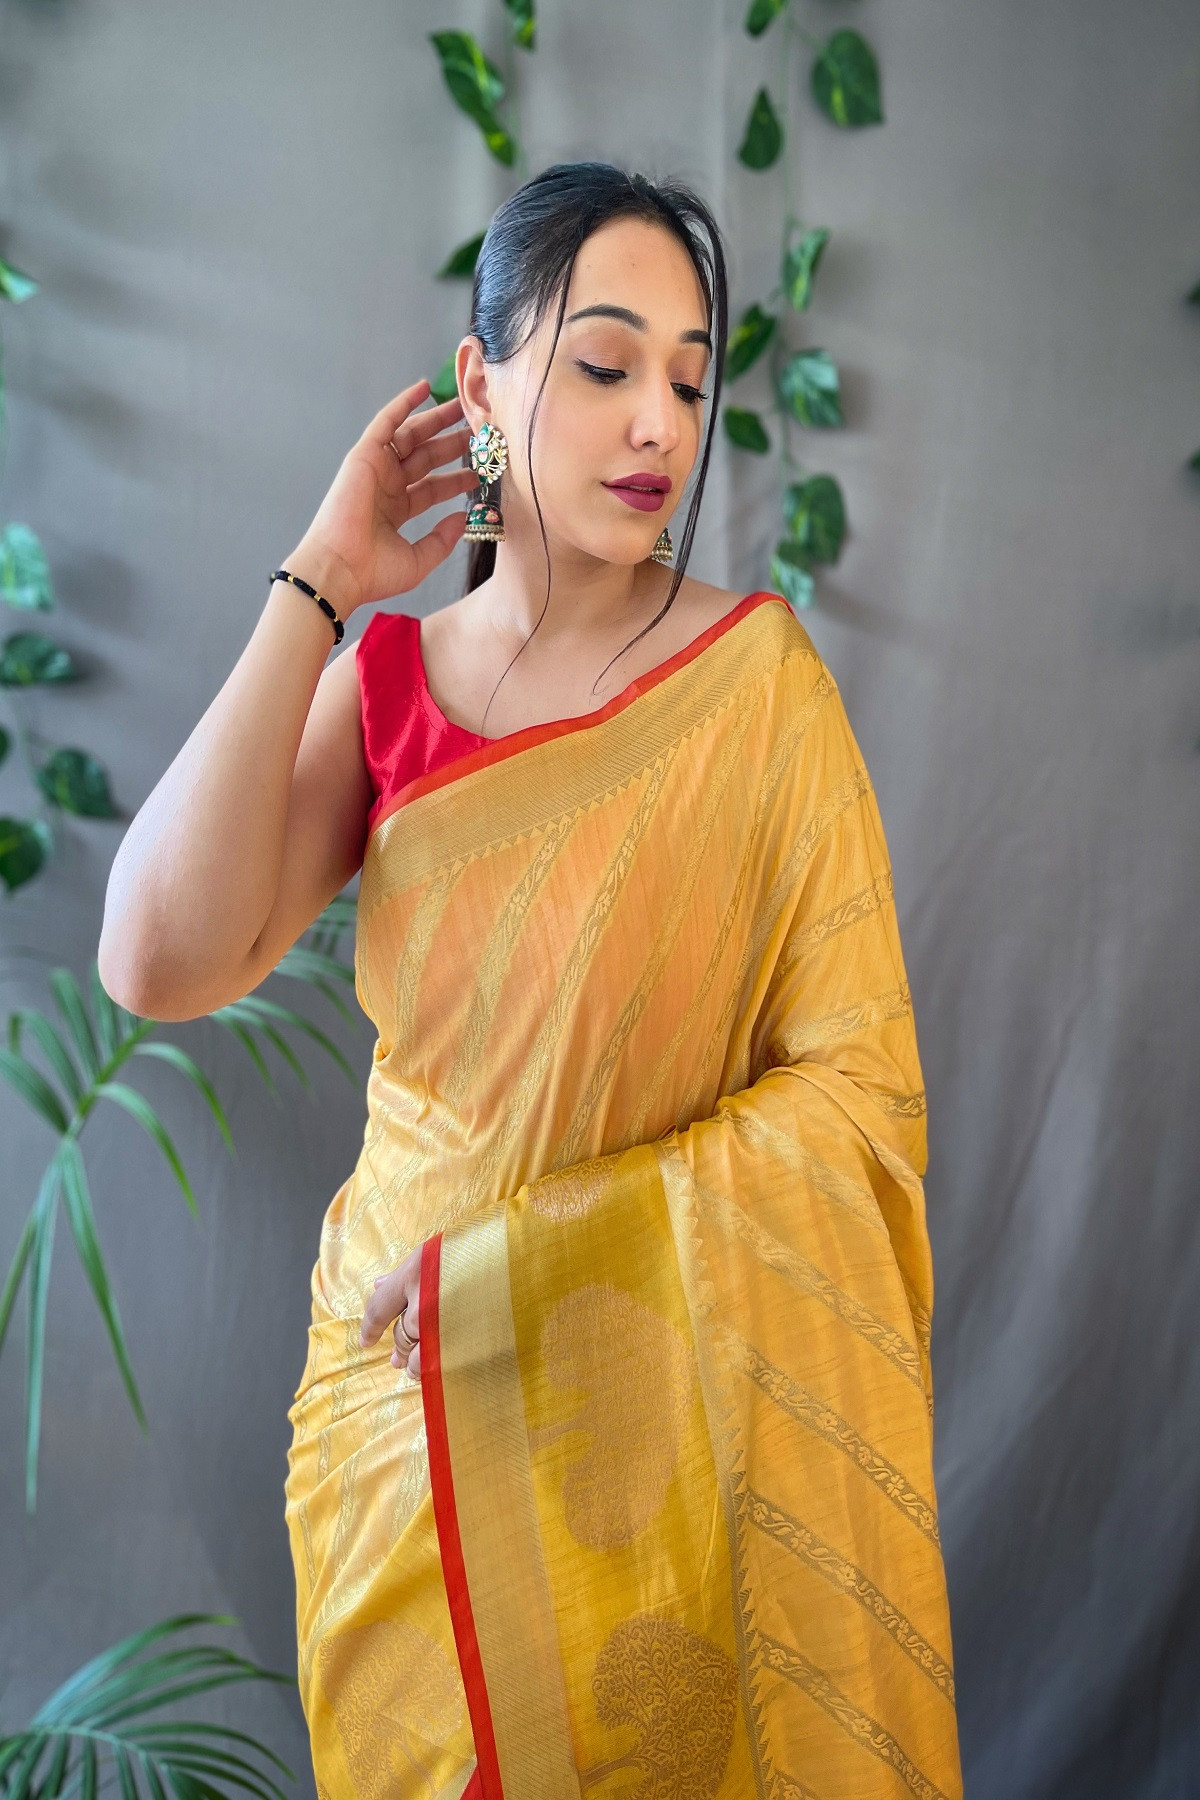 Pure Cotton Gold zari Lehariya woven saree - Yellow